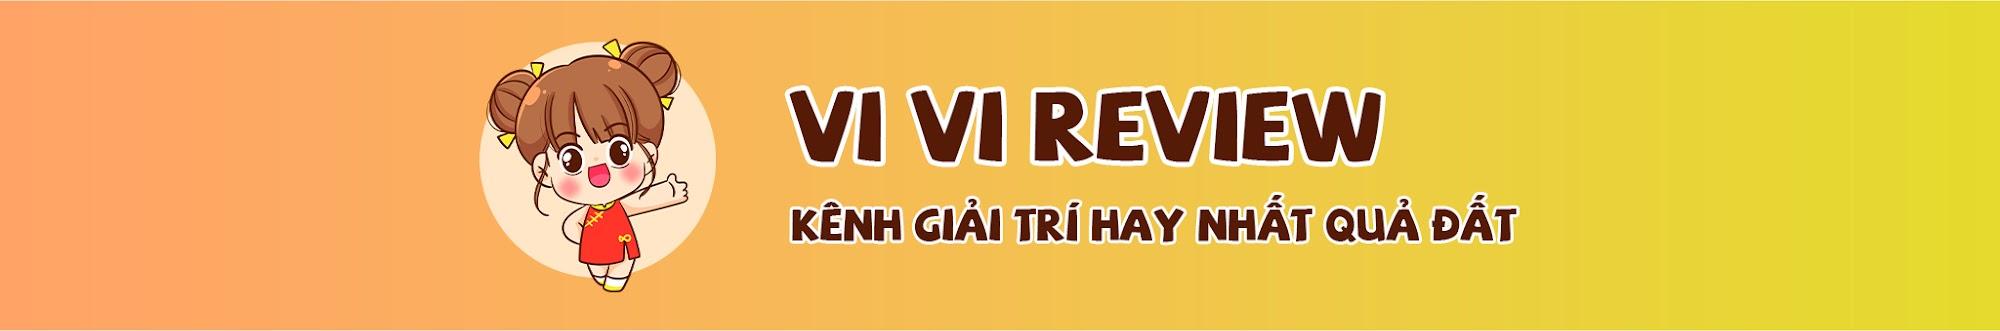 Vi Vi Review